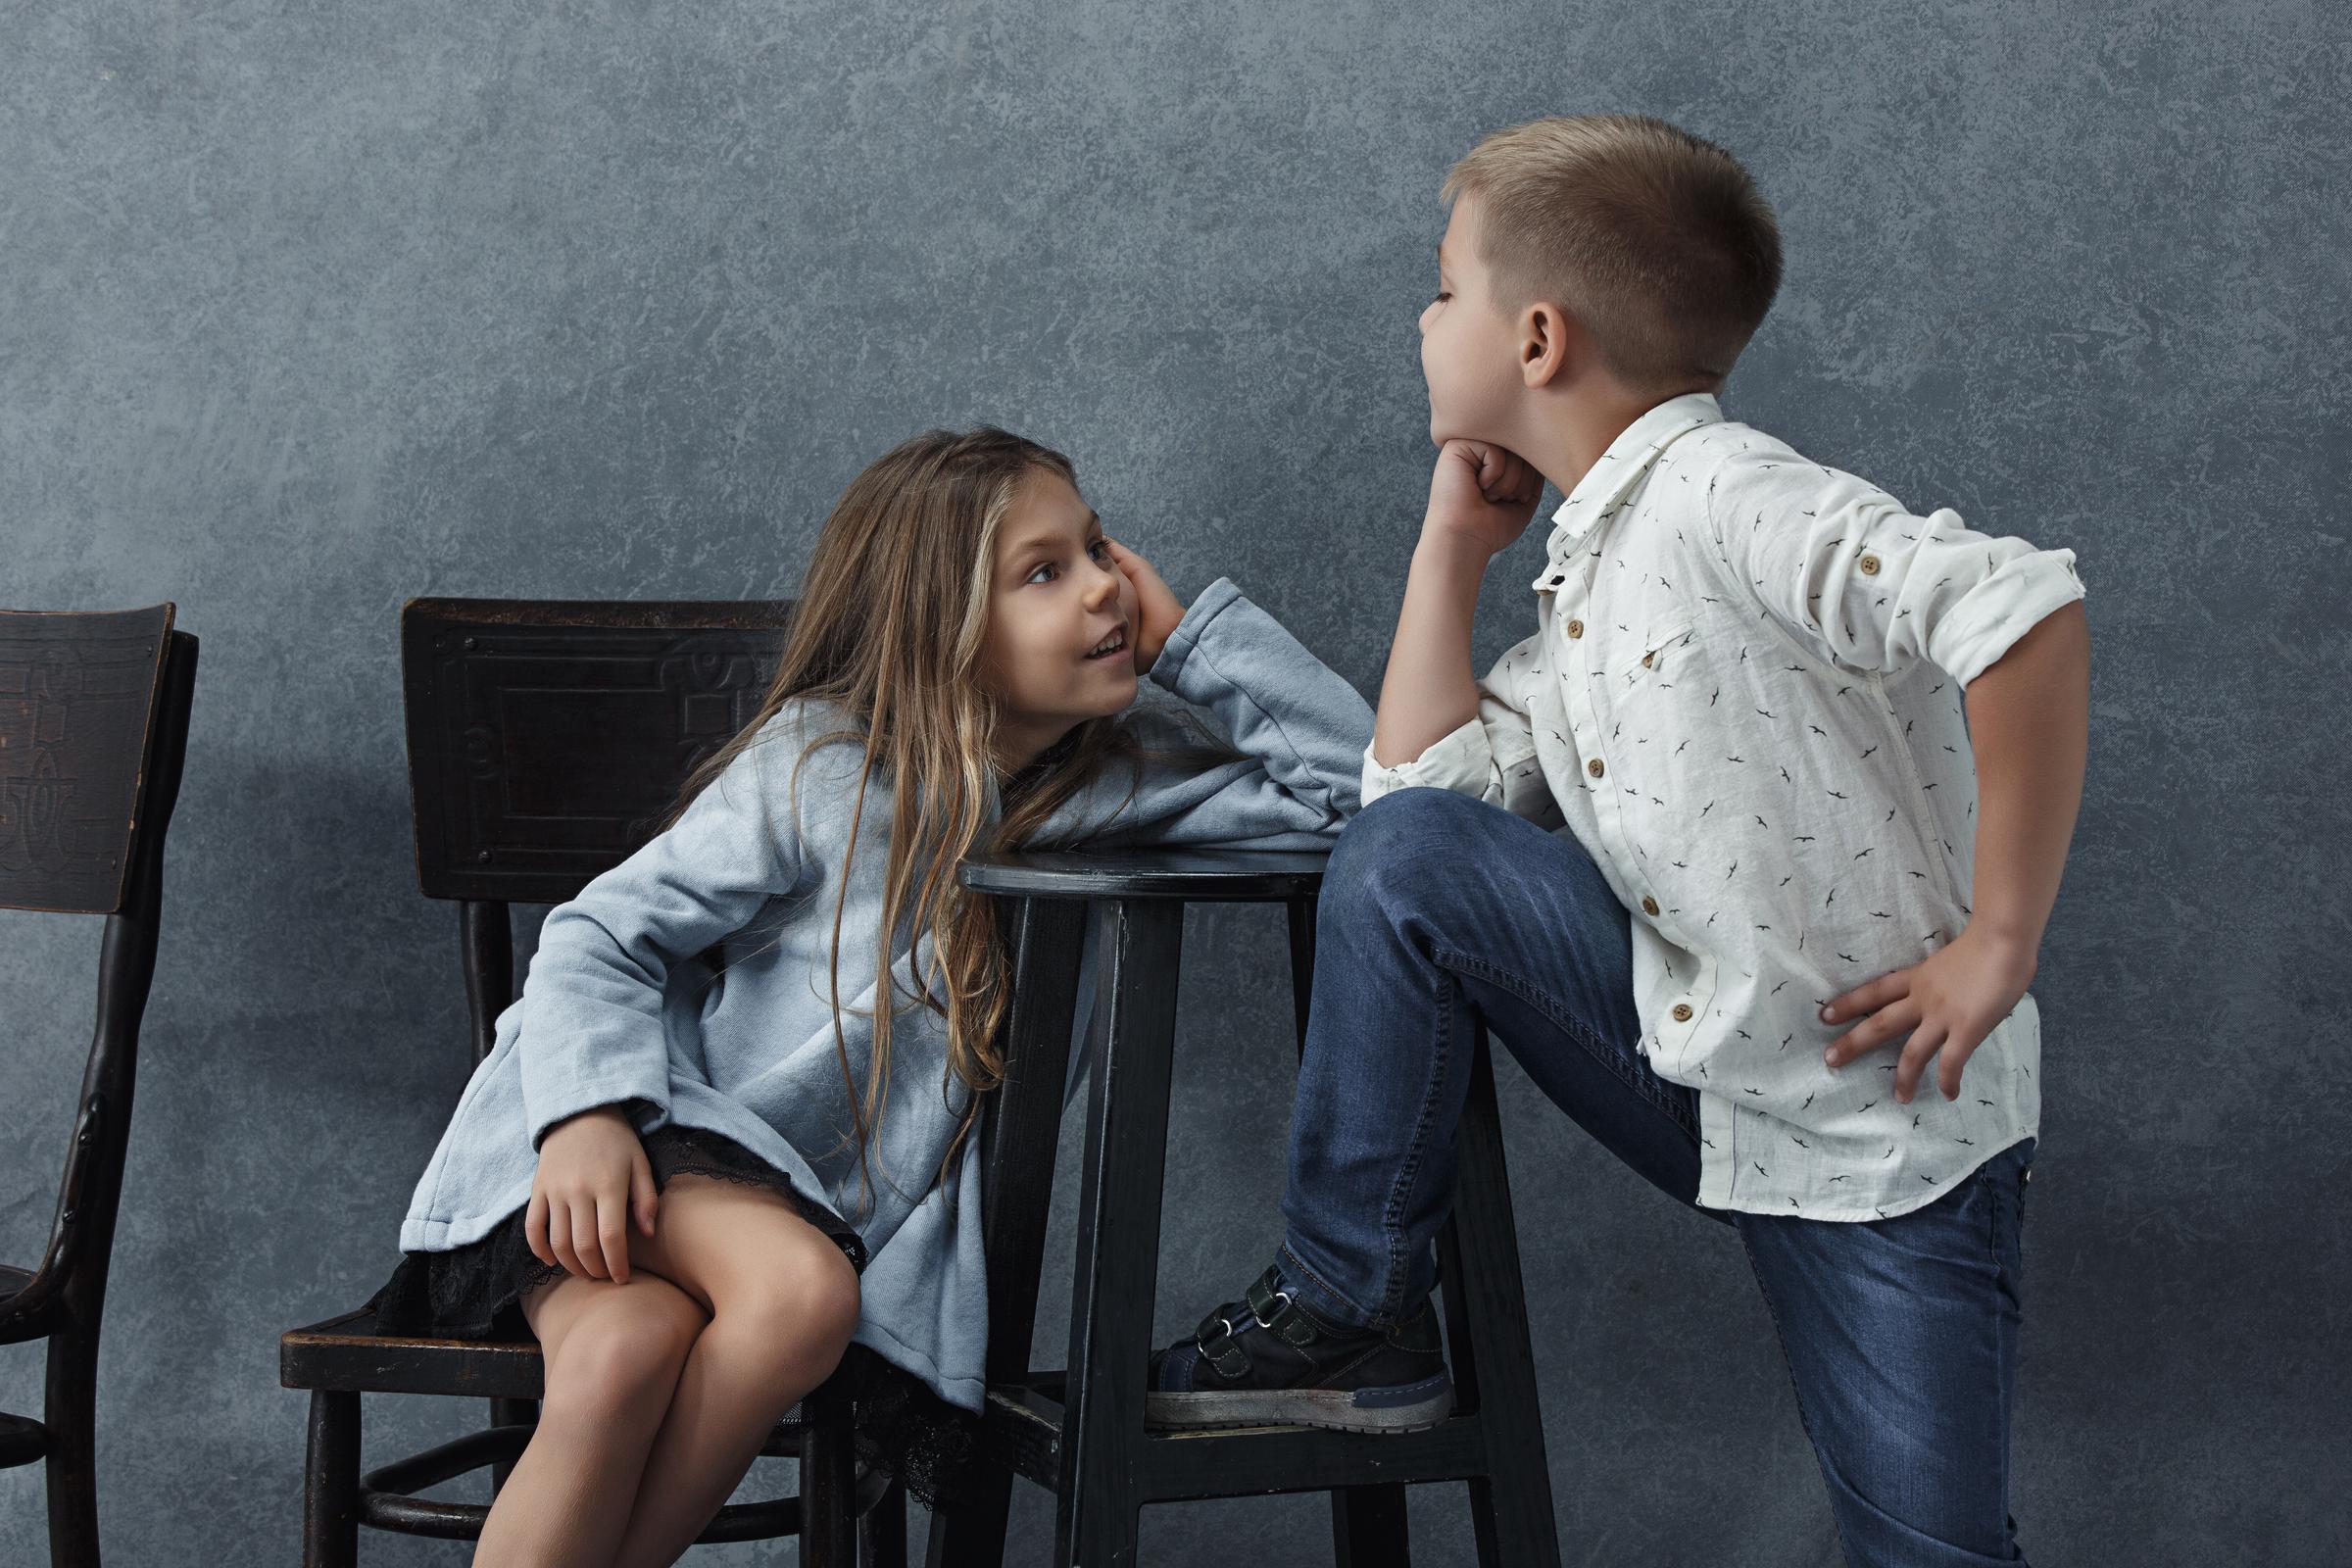 Two kids arguing | Source: Freepik